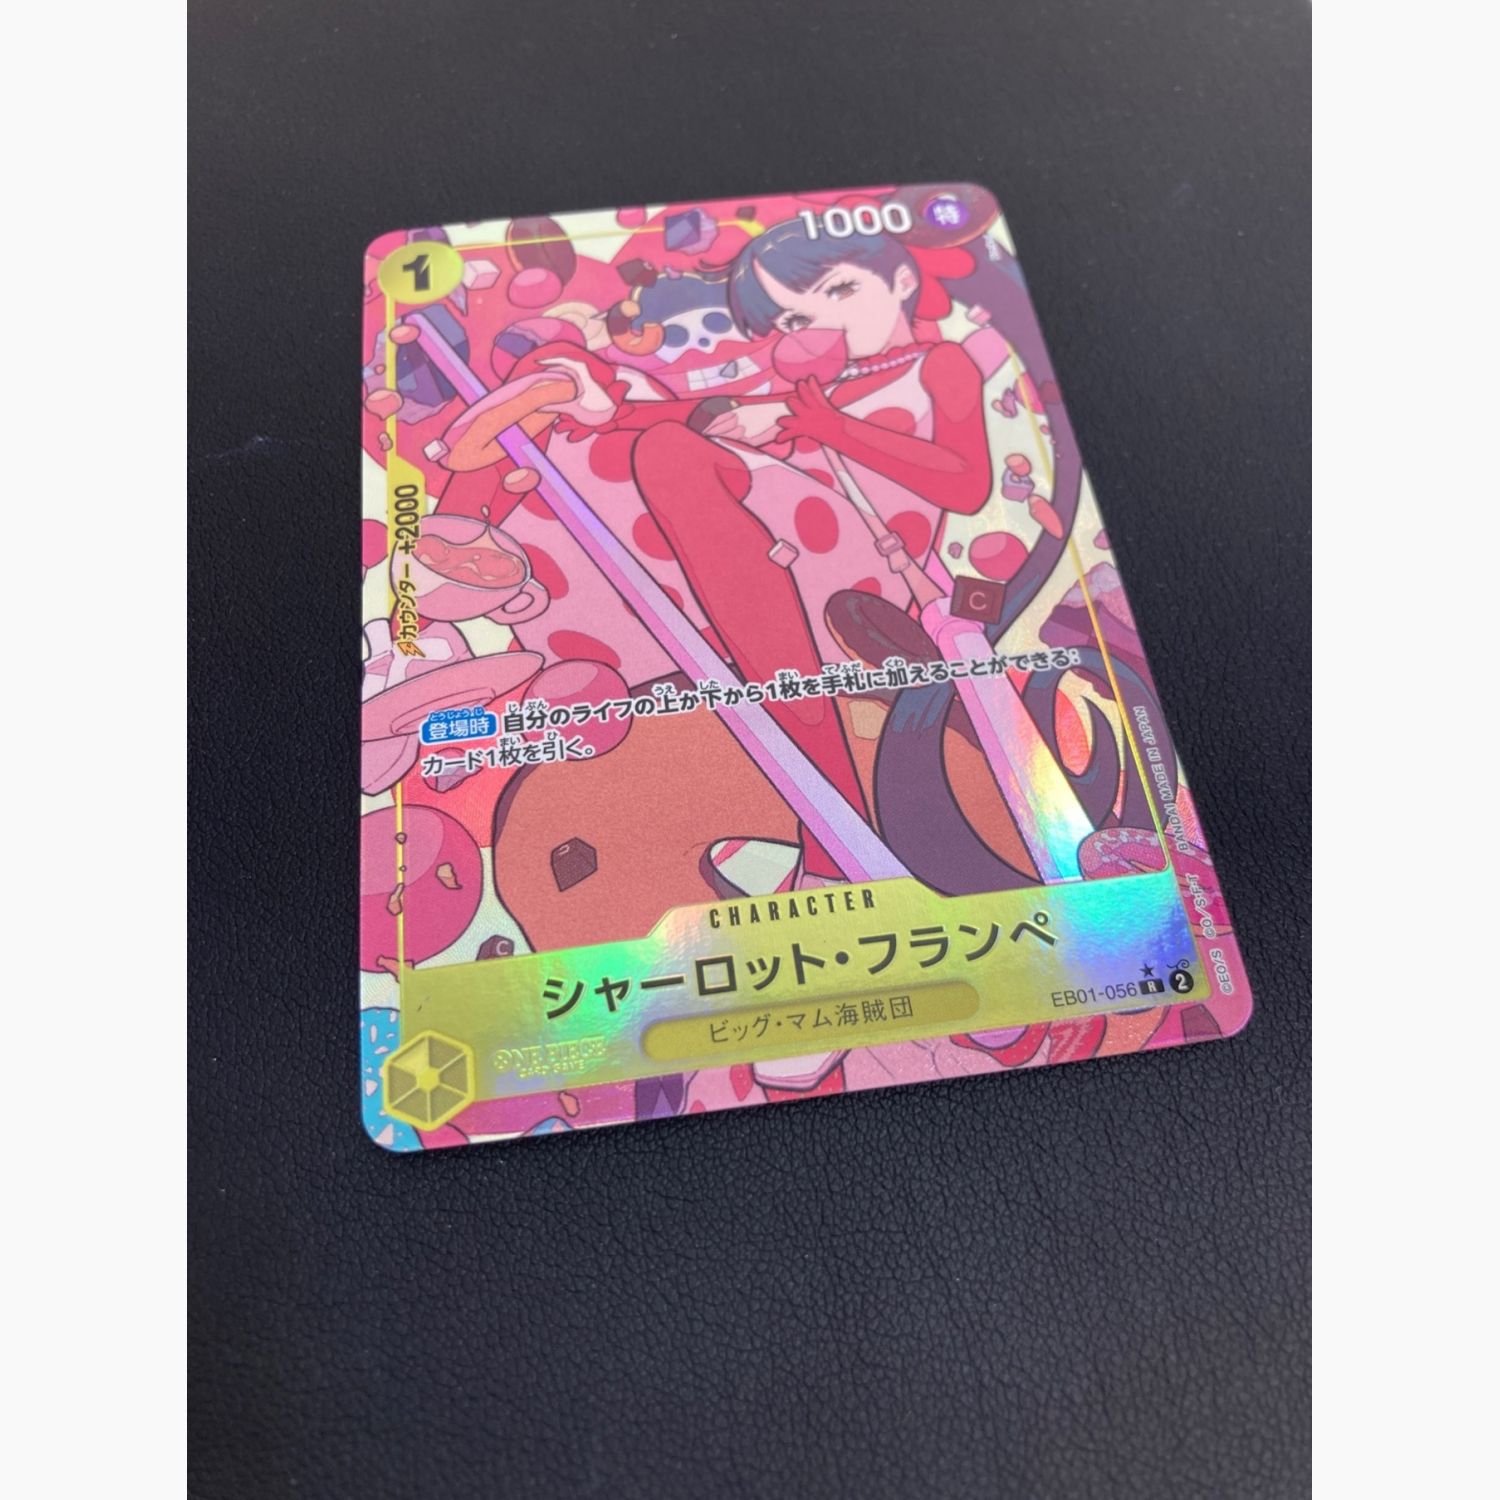 ワンピースカードゲーム シャーロット・フランペ EB01-056 R(パラレル 